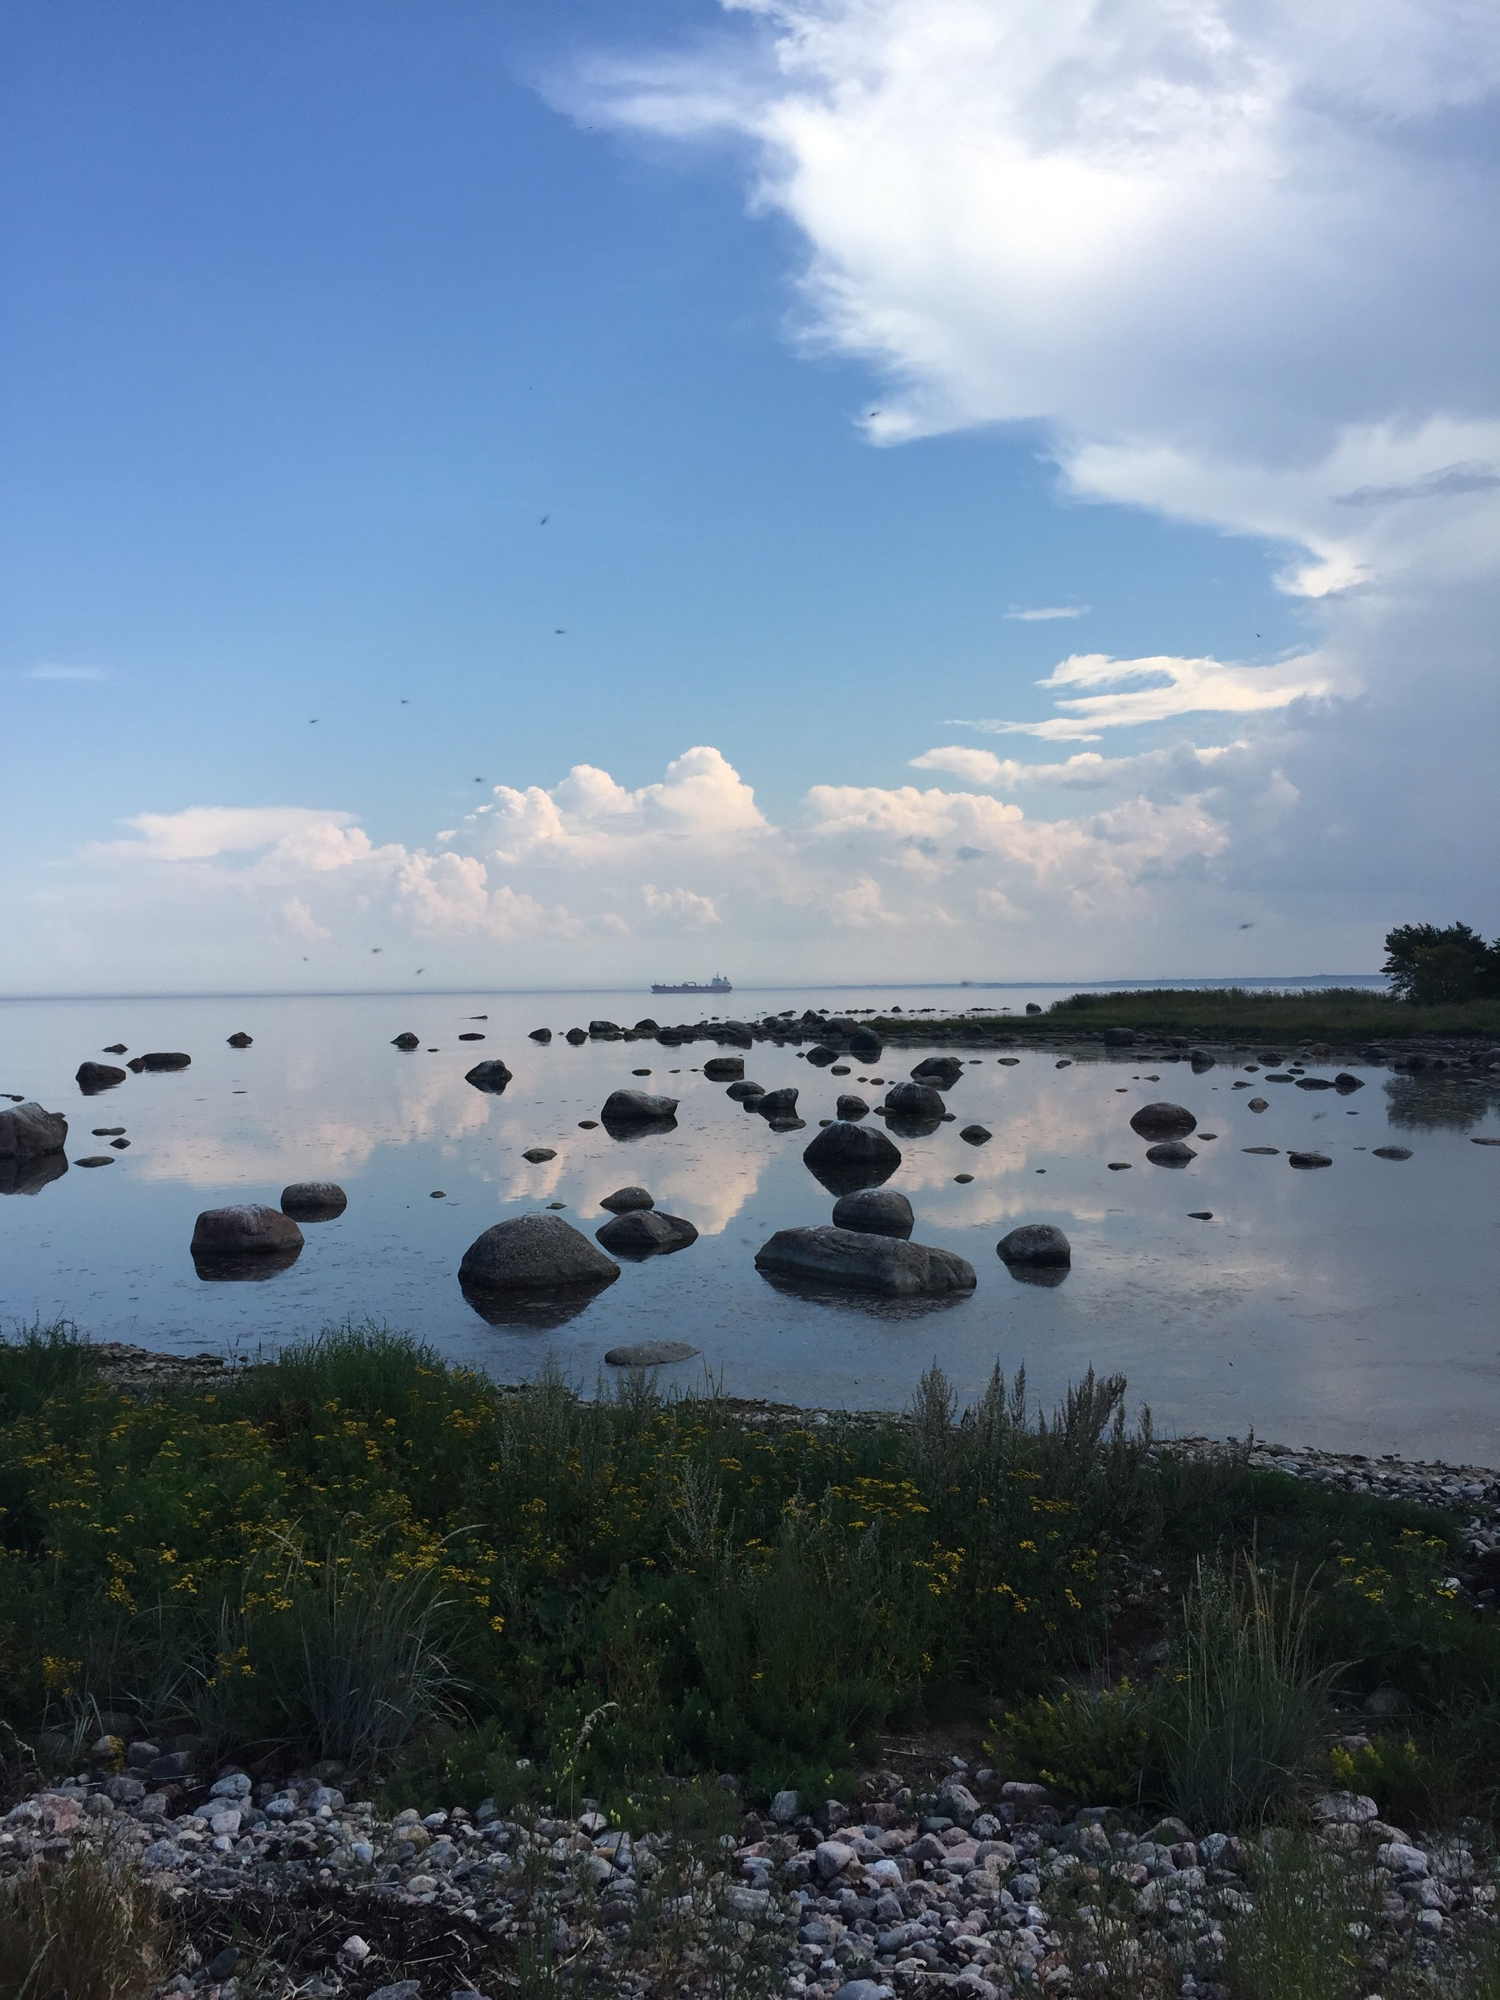 Bucht im Norden von Aegna, im Vordergrund große Steine in einem ruhigen Wasser, am Horizont ein Frachtschiff, am Himmel Wolken